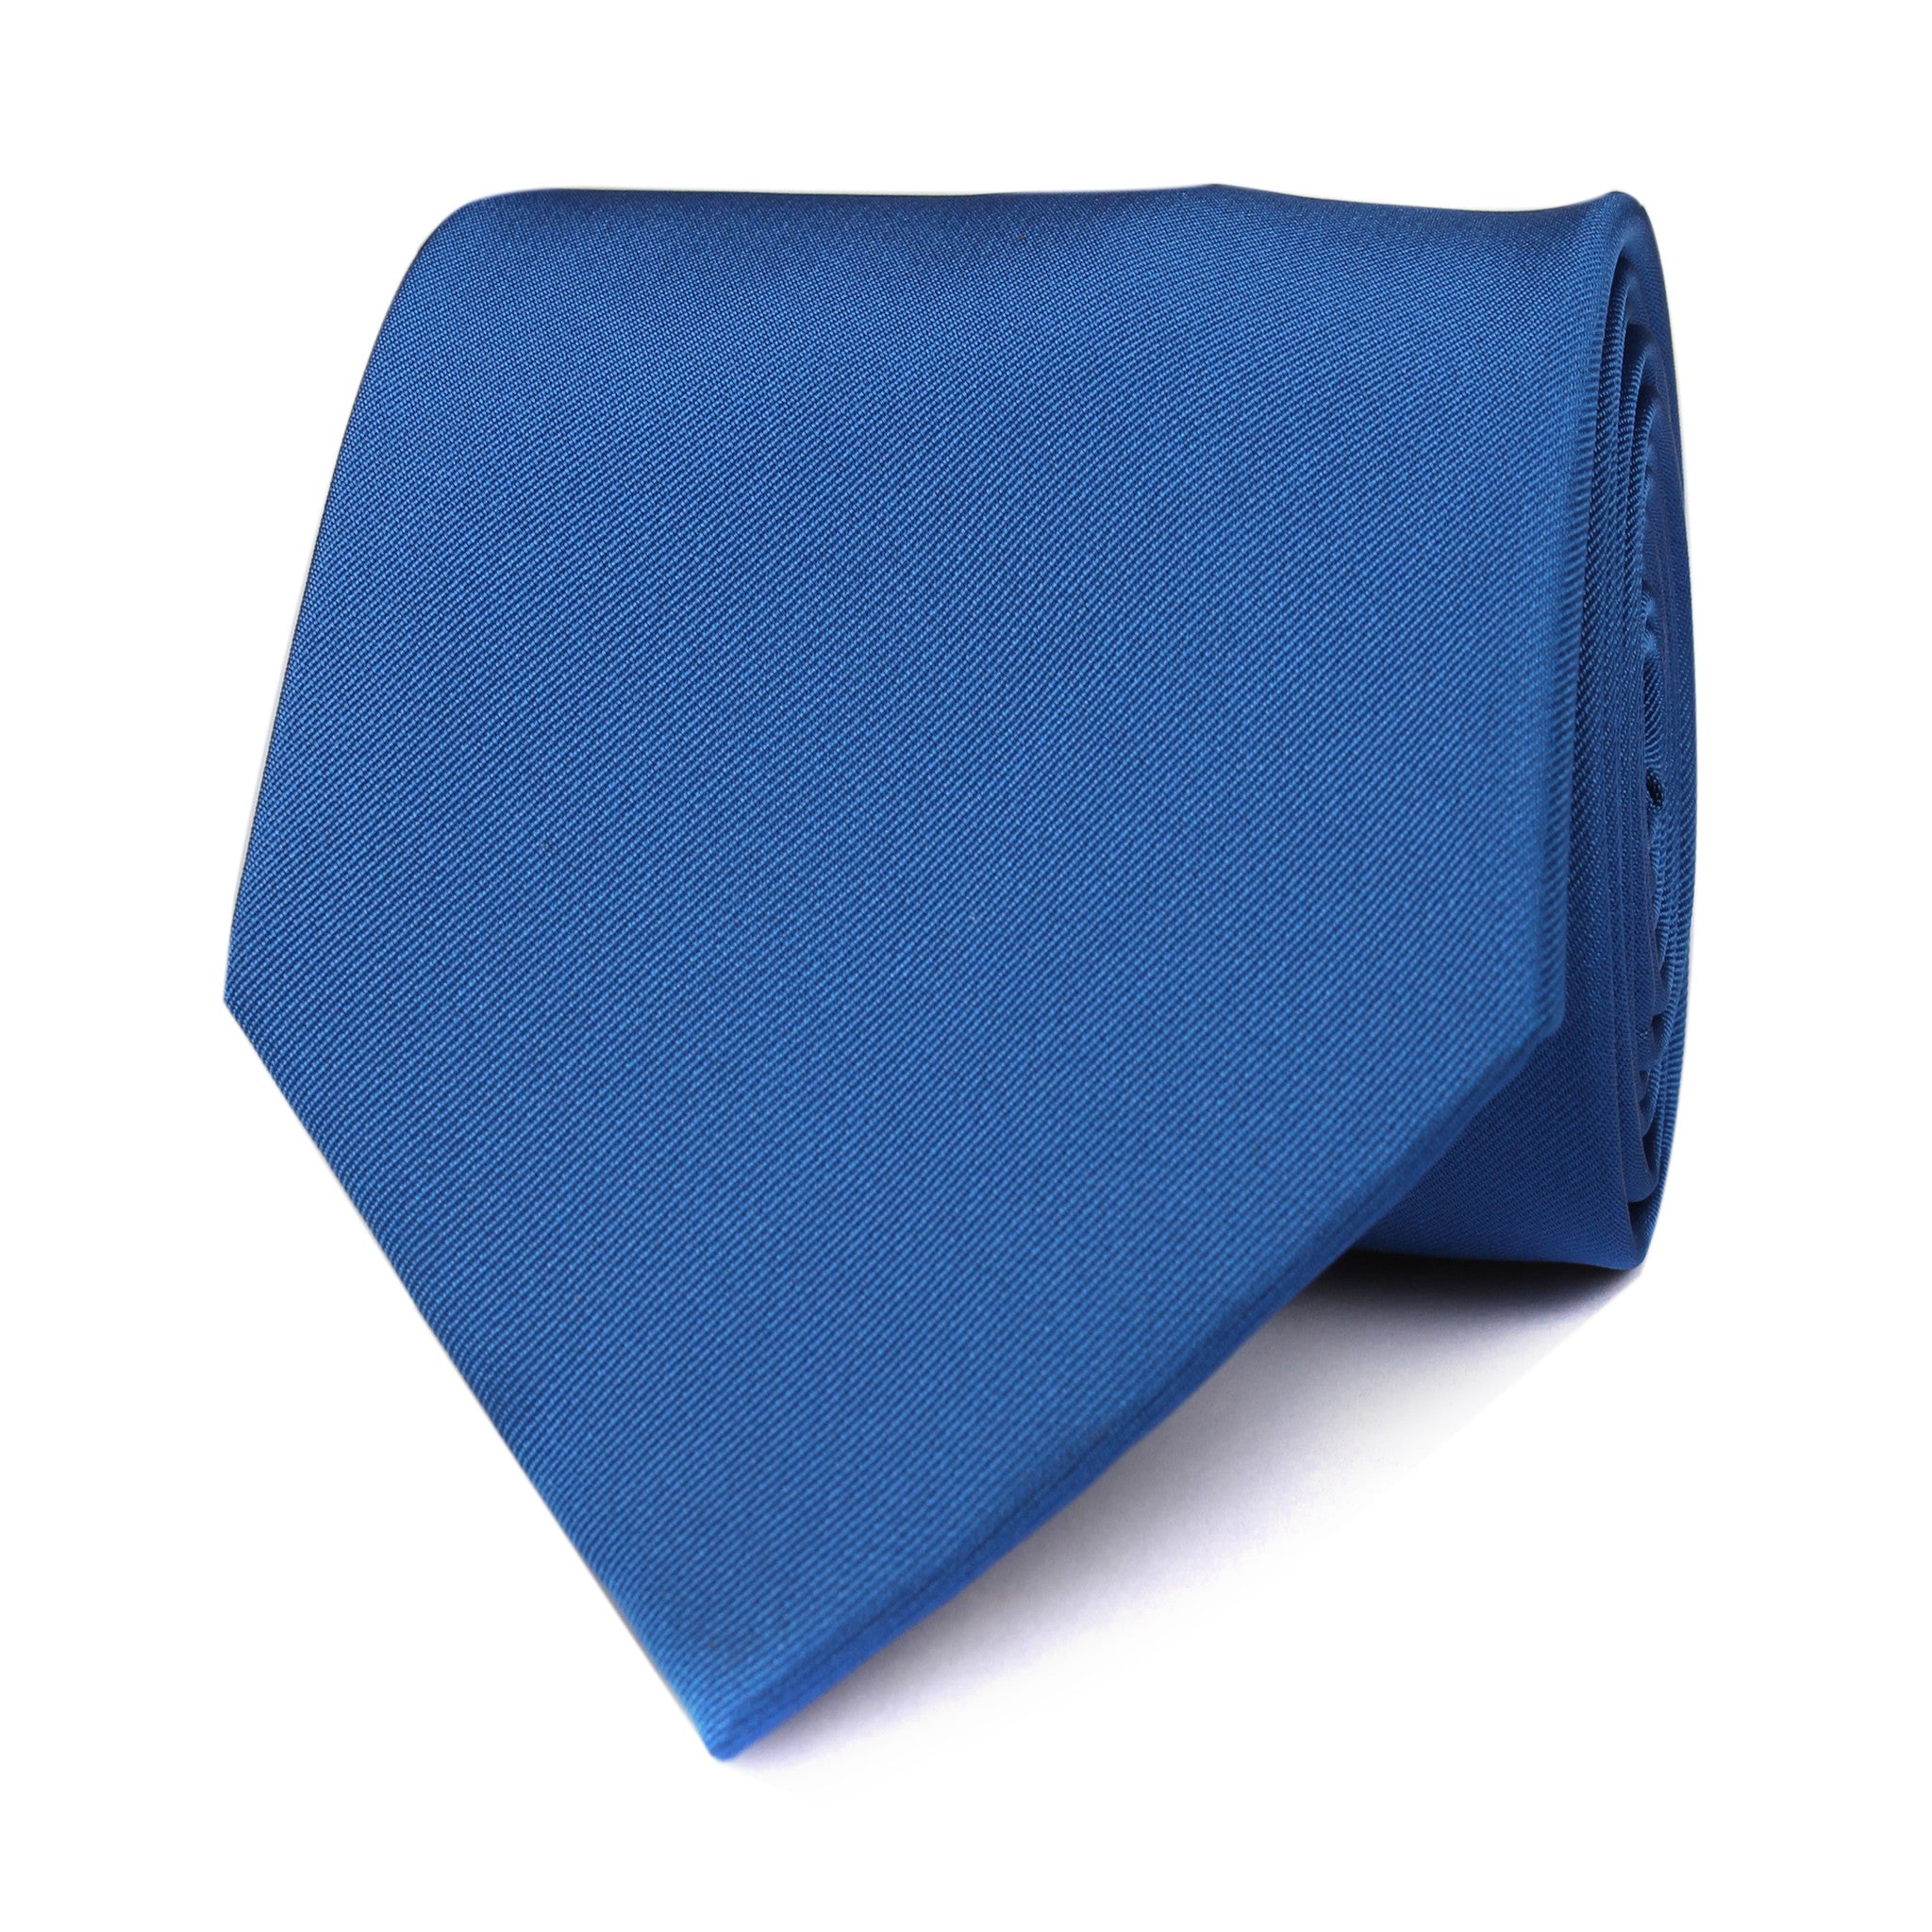 Sapphire Blue Necktie Front View